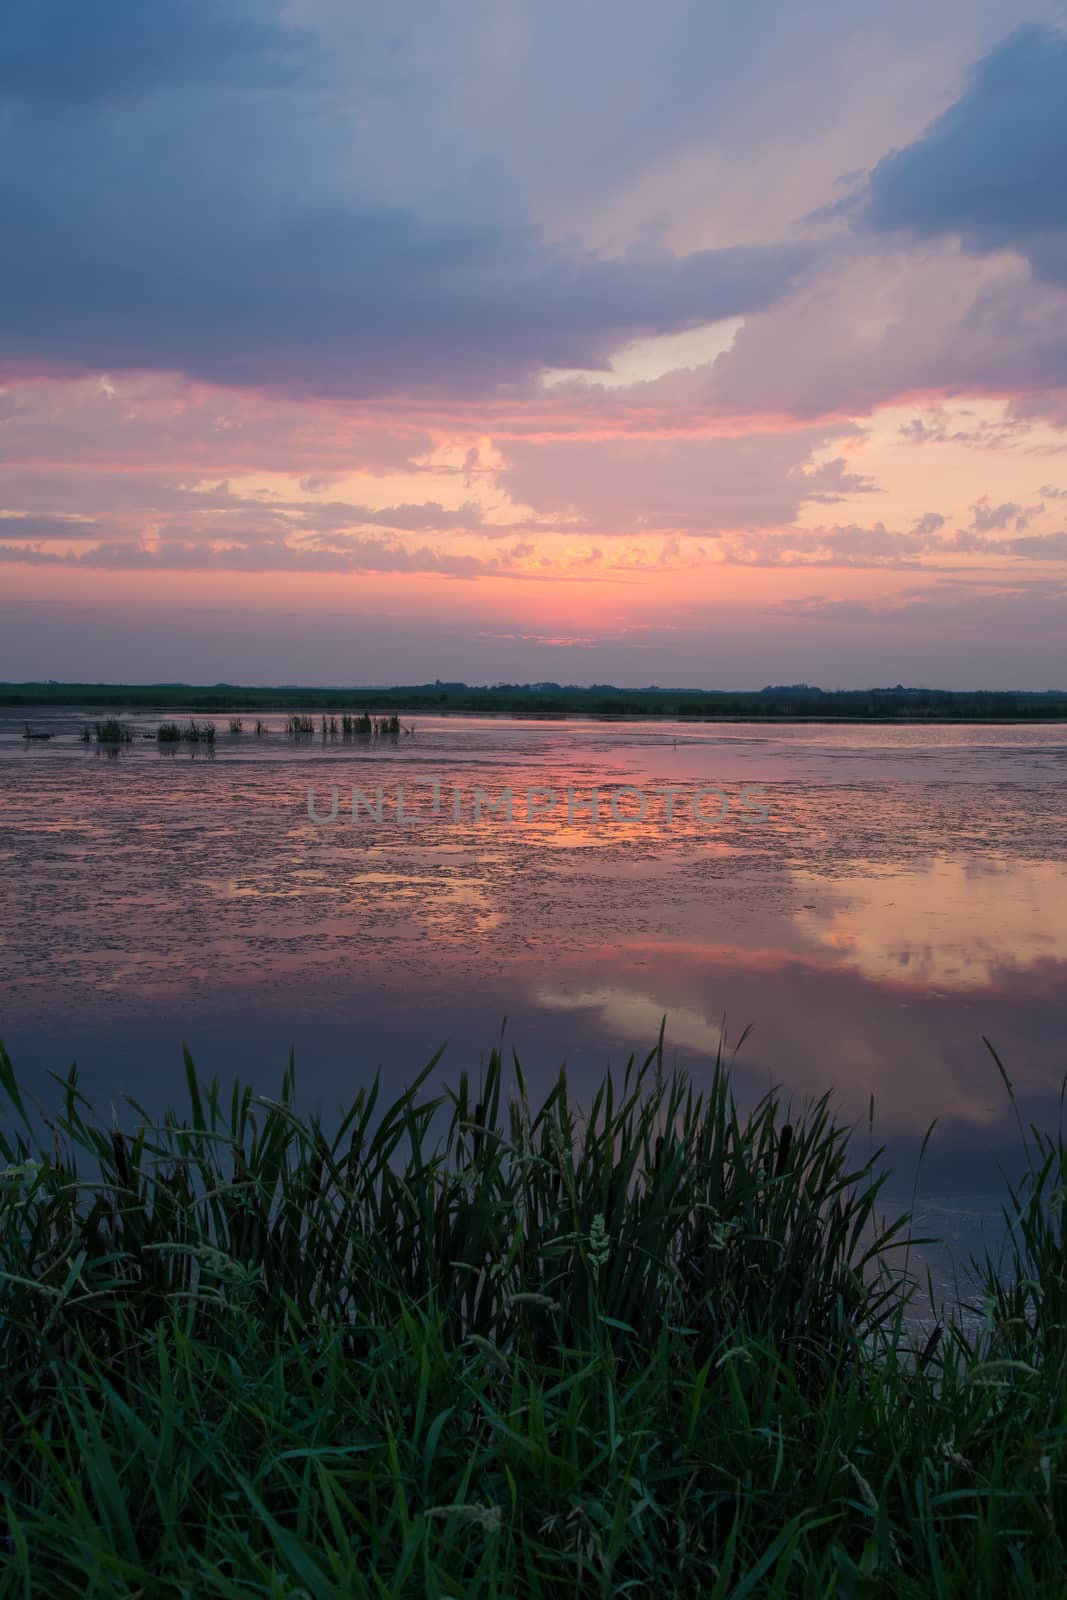 Sunset Reflection on a Small Lake by rjamphoto